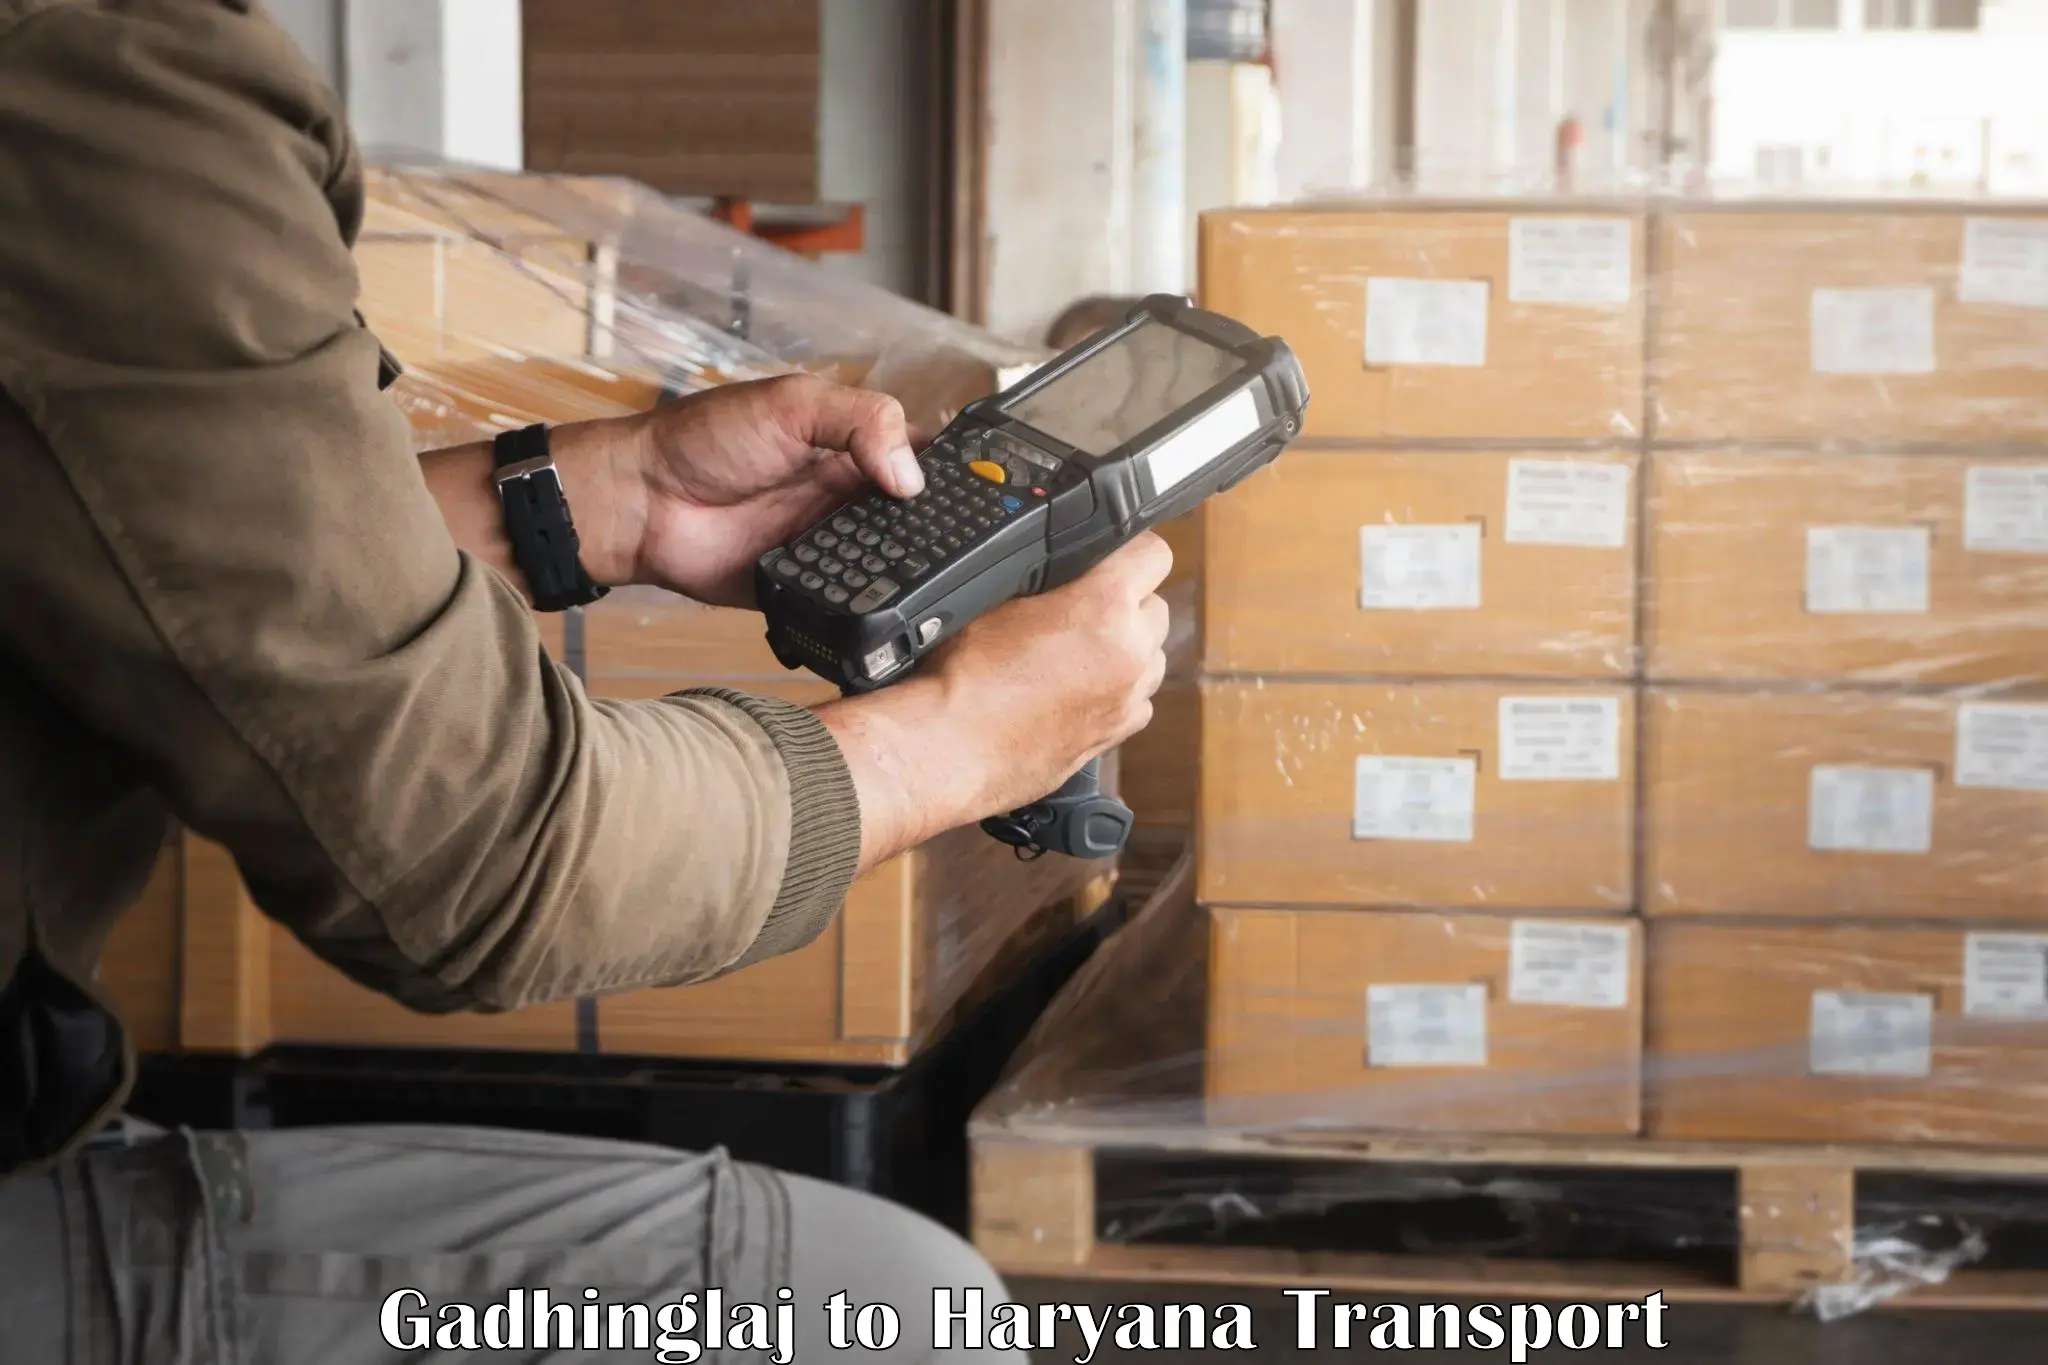 Air freight transport services Gadhinglaj to NCR Haryana